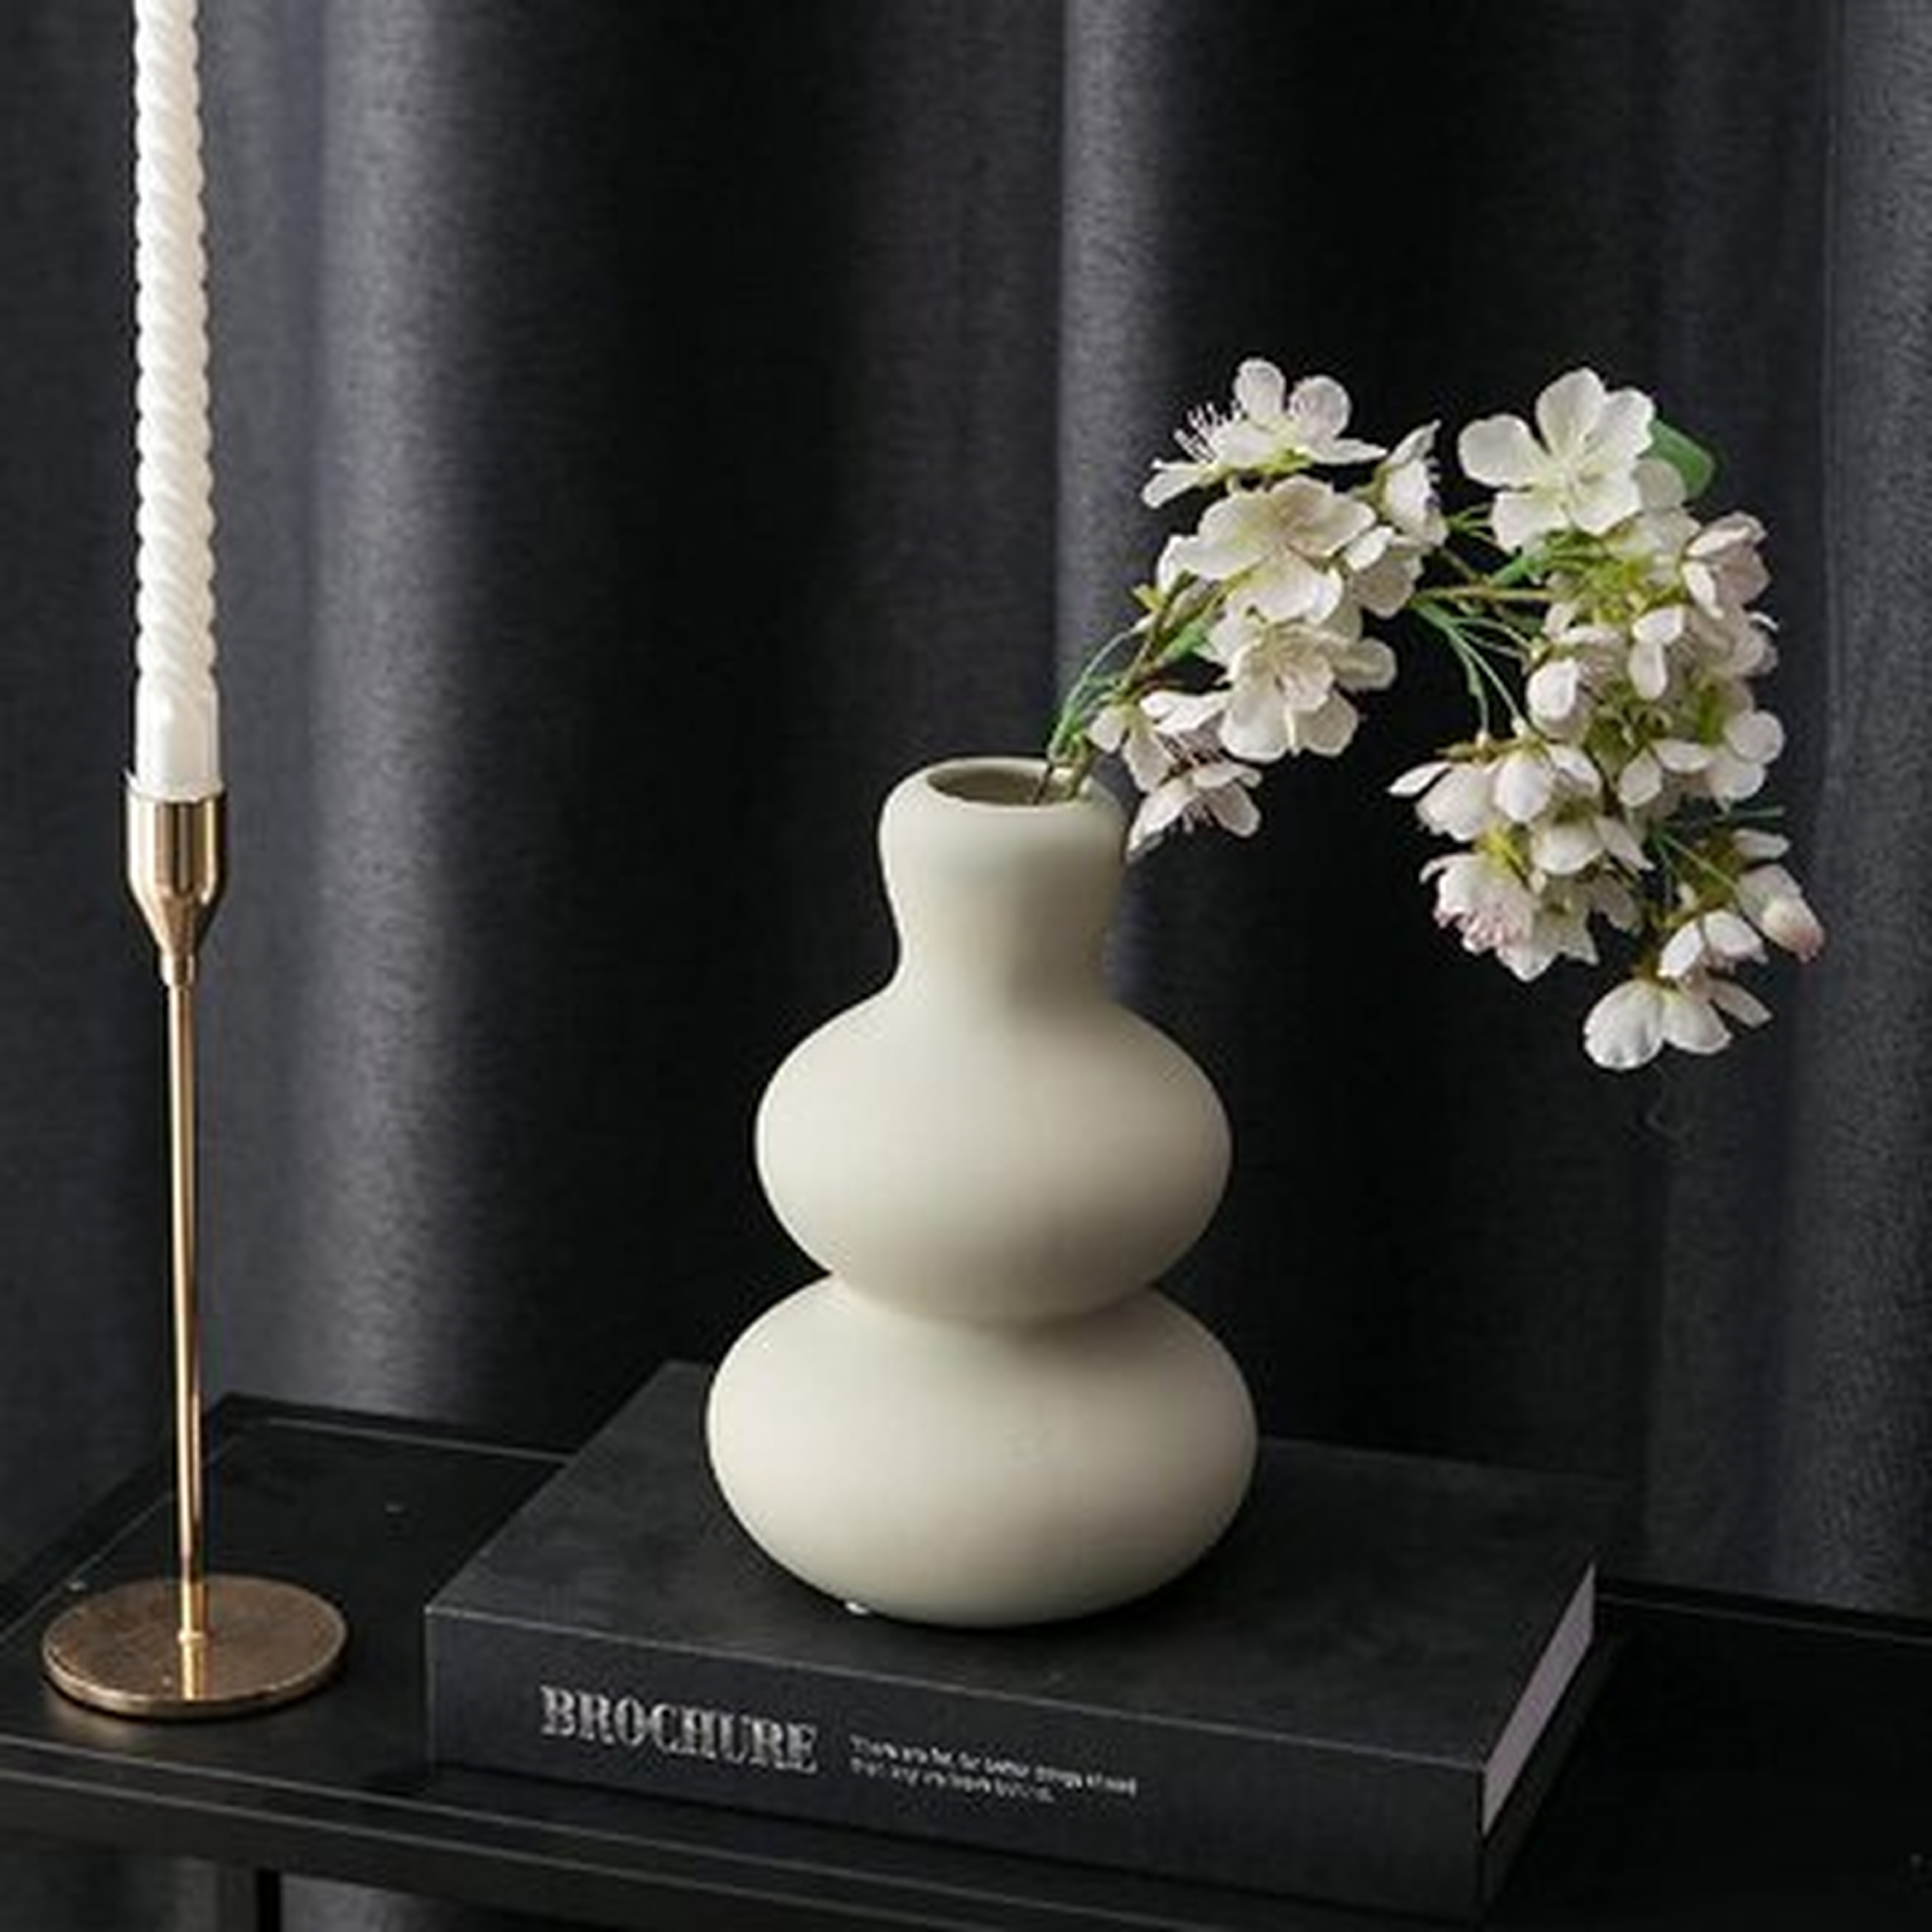 Flower Vase Ceramic Vases For Decor, Flower Vase For Home Decor Living Room, Home, Office, Centerpiece,Table And Wedding - Wayfair